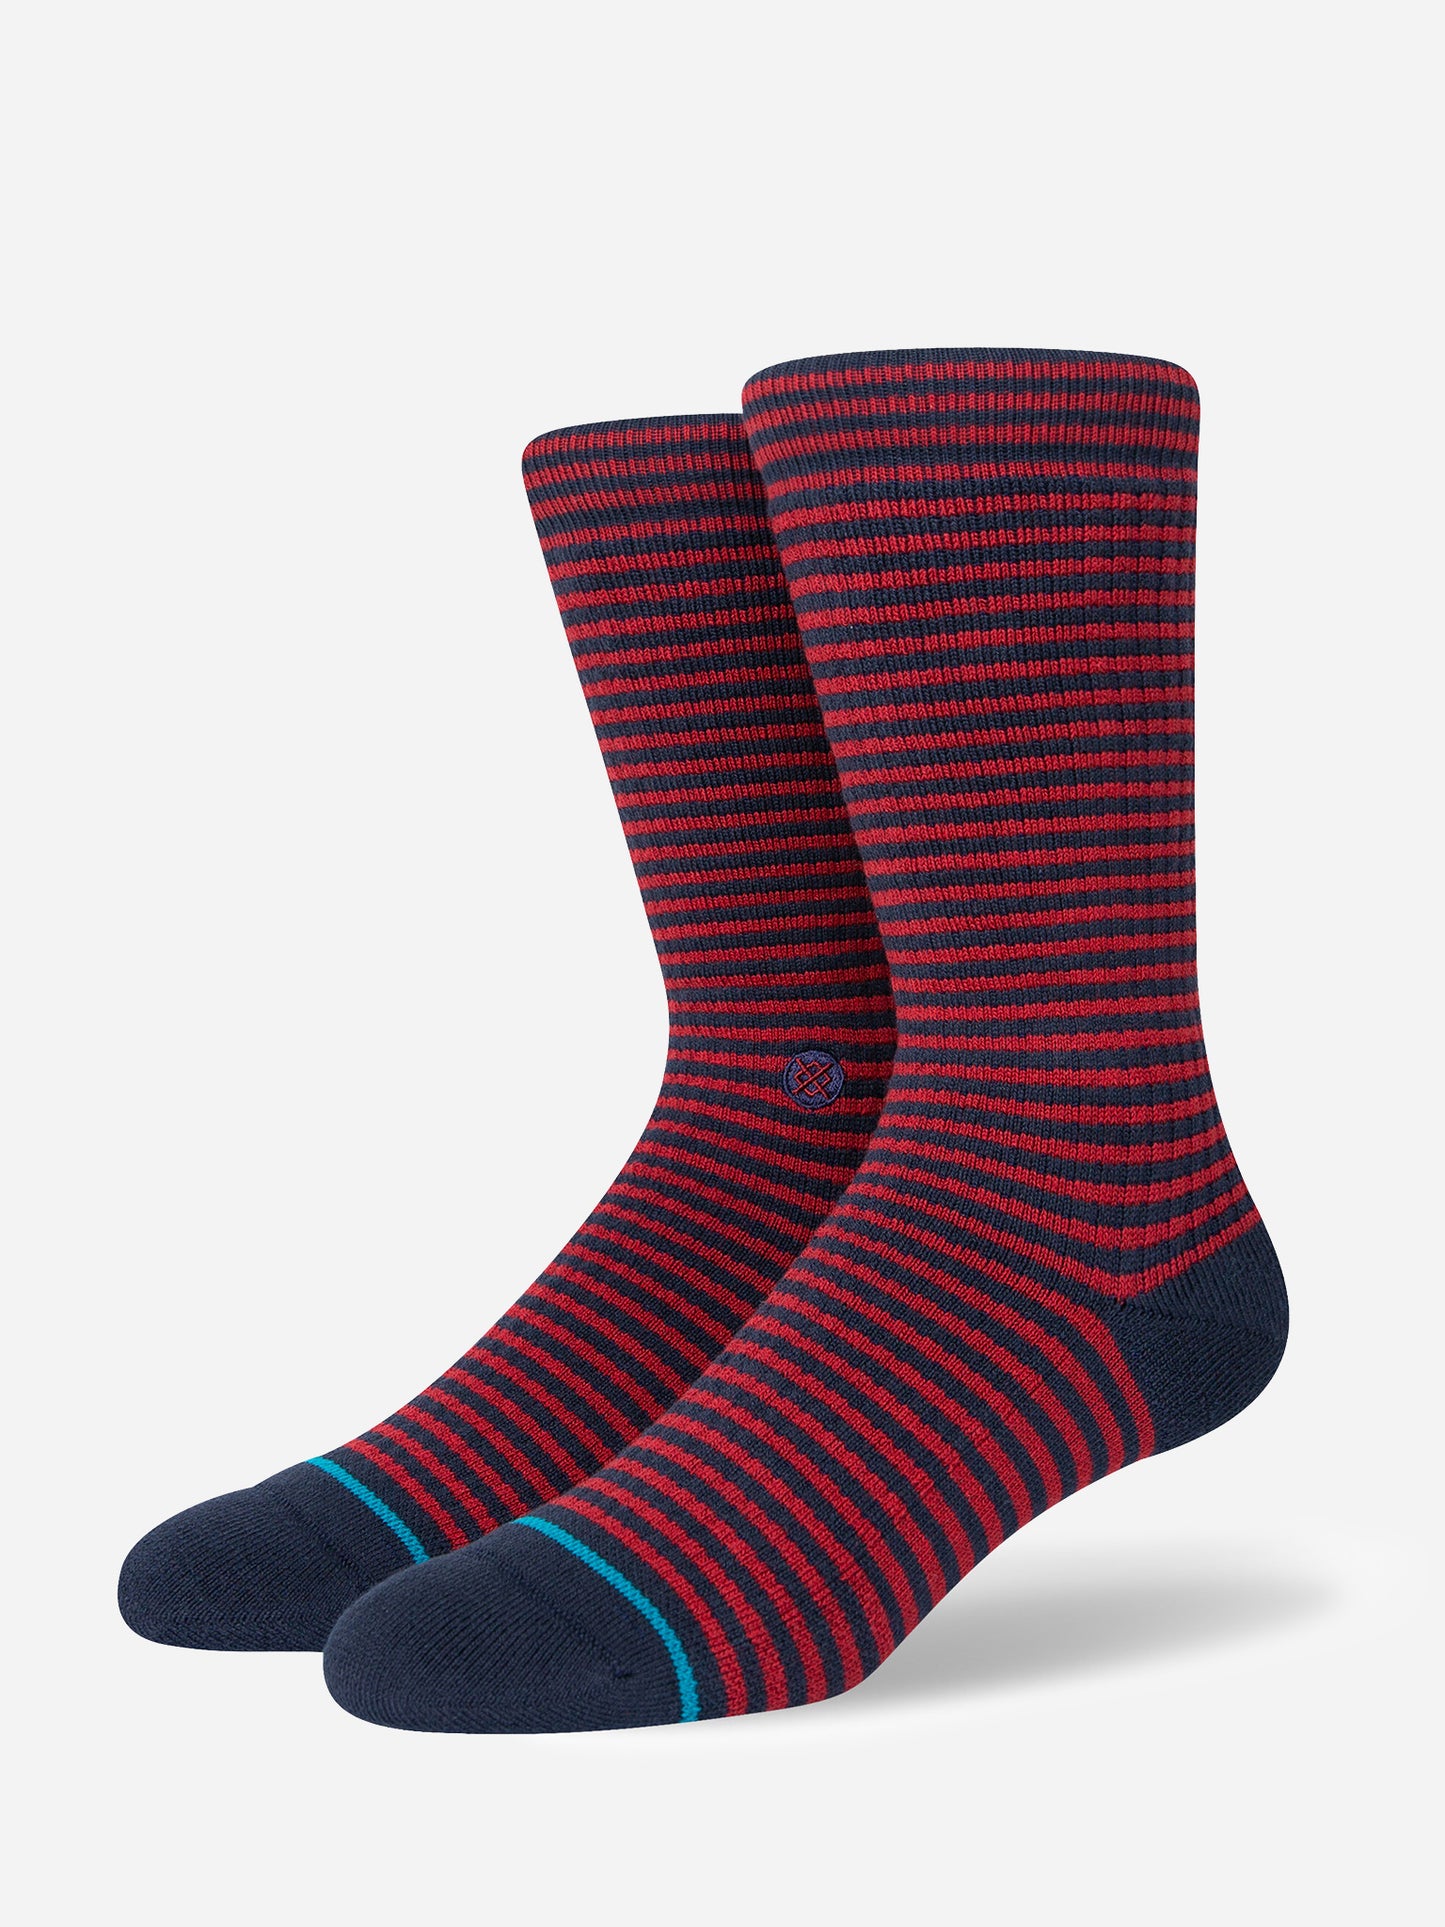 Stance Men's Hyper Stripe Crew Socks